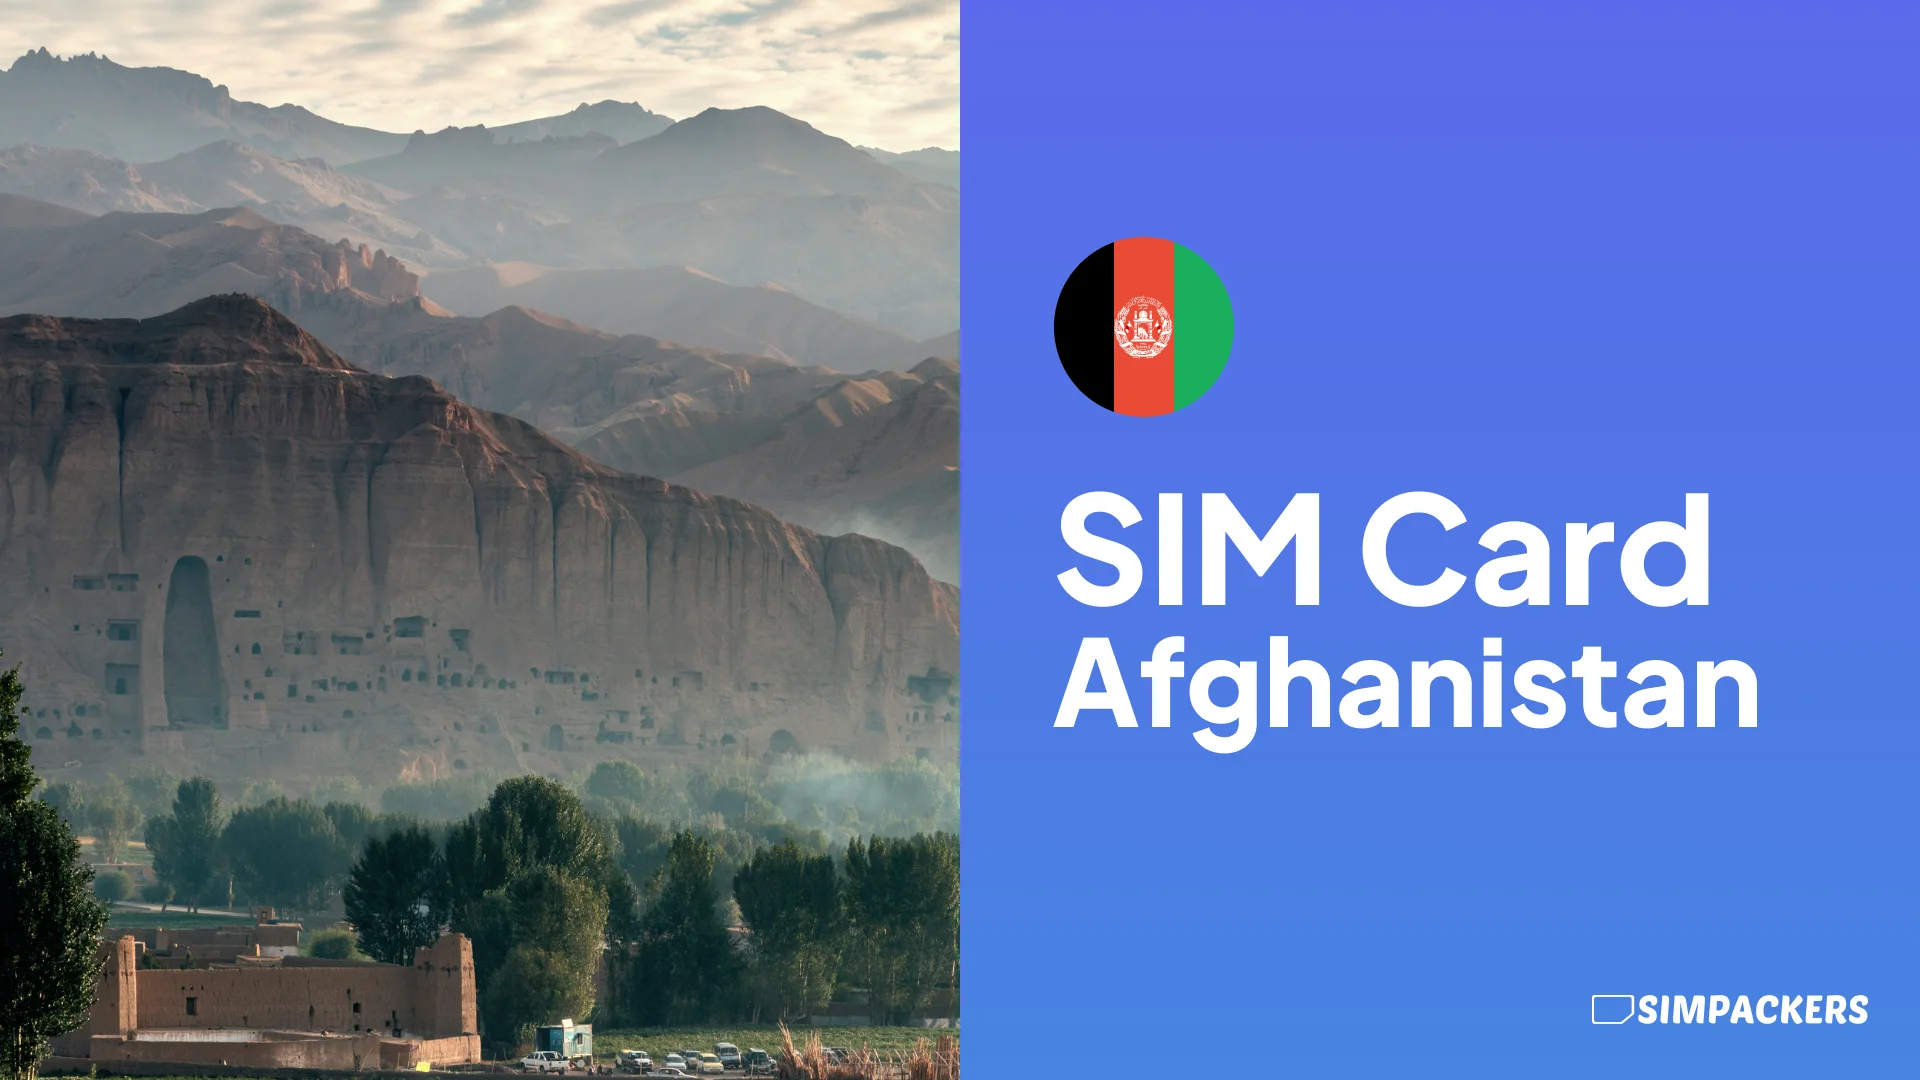 EN/FEATURED_IMAGES/sim-card-afghanistan.webp